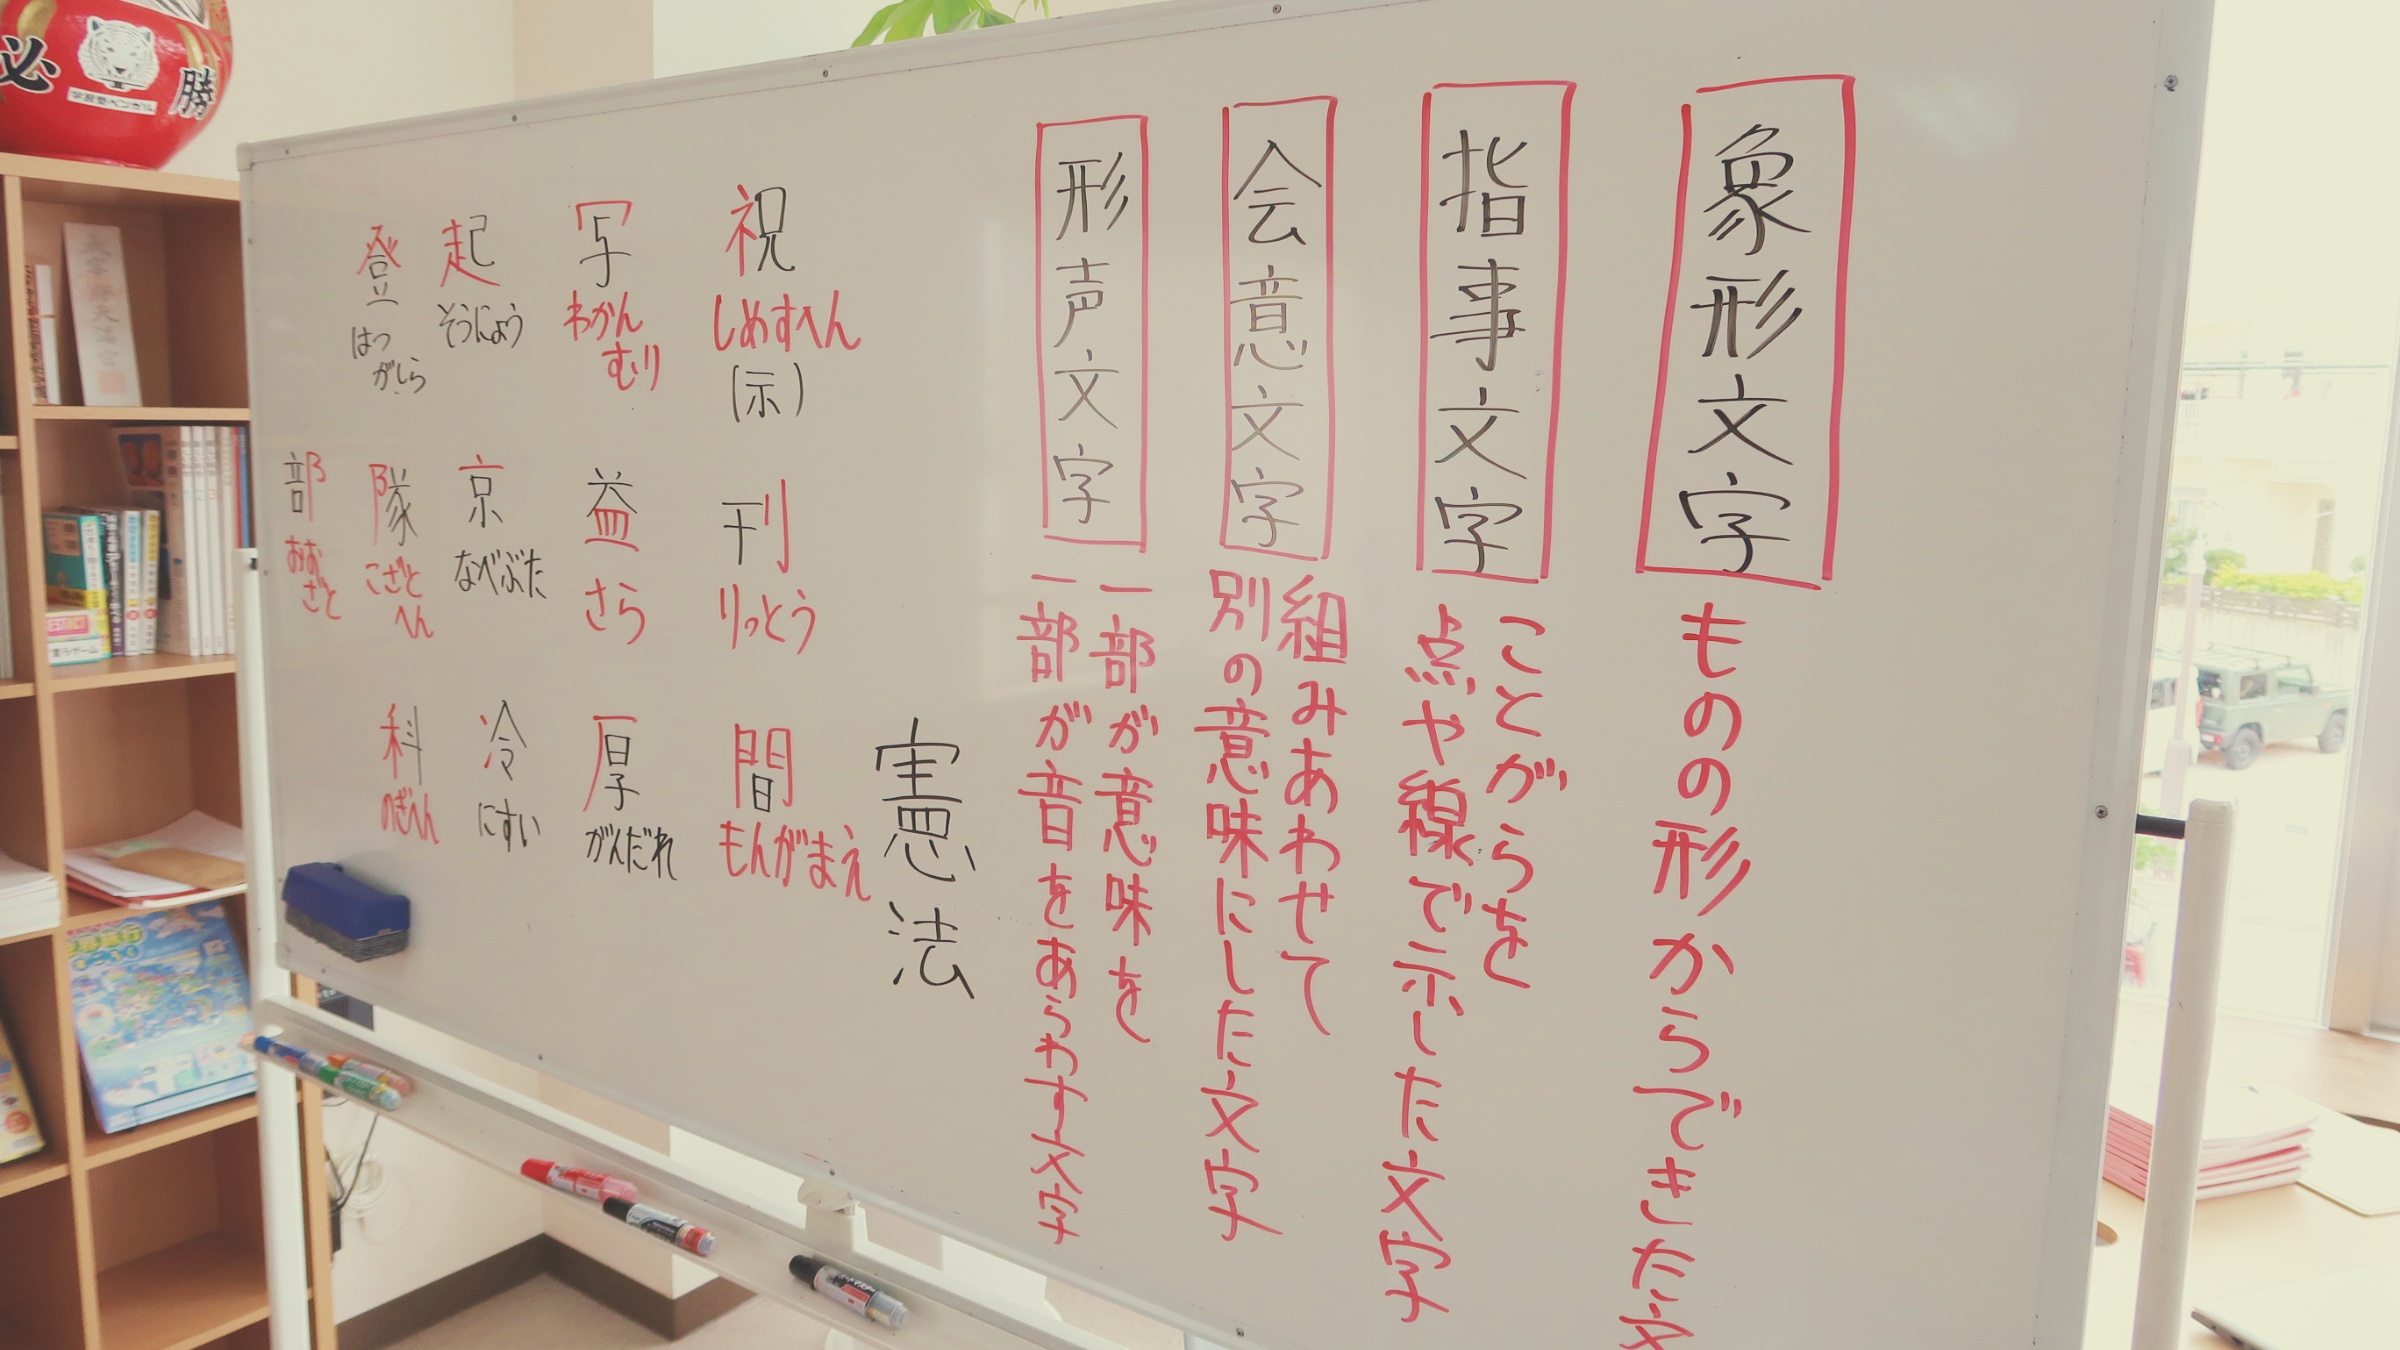 漢字の種類についてのホワイトボード